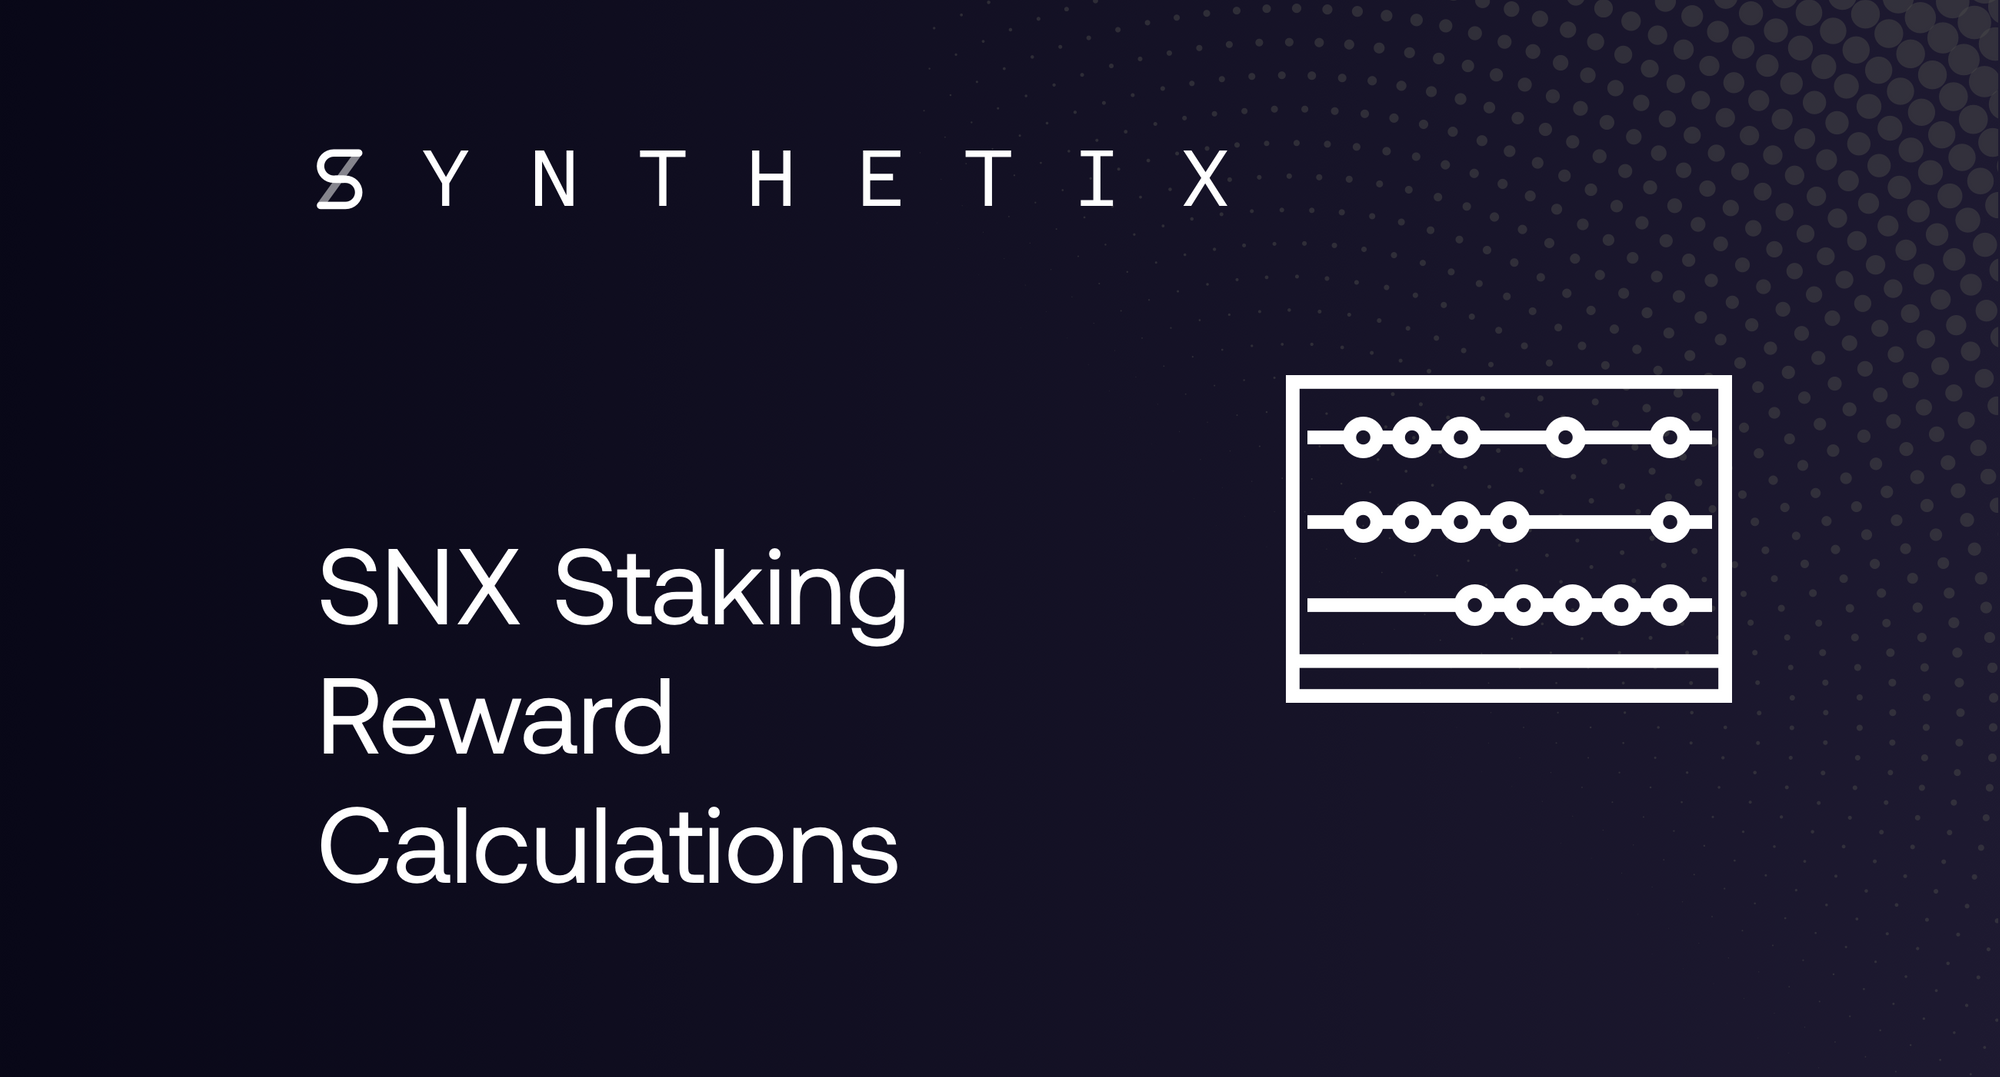 SNX Staking Reward Calculations